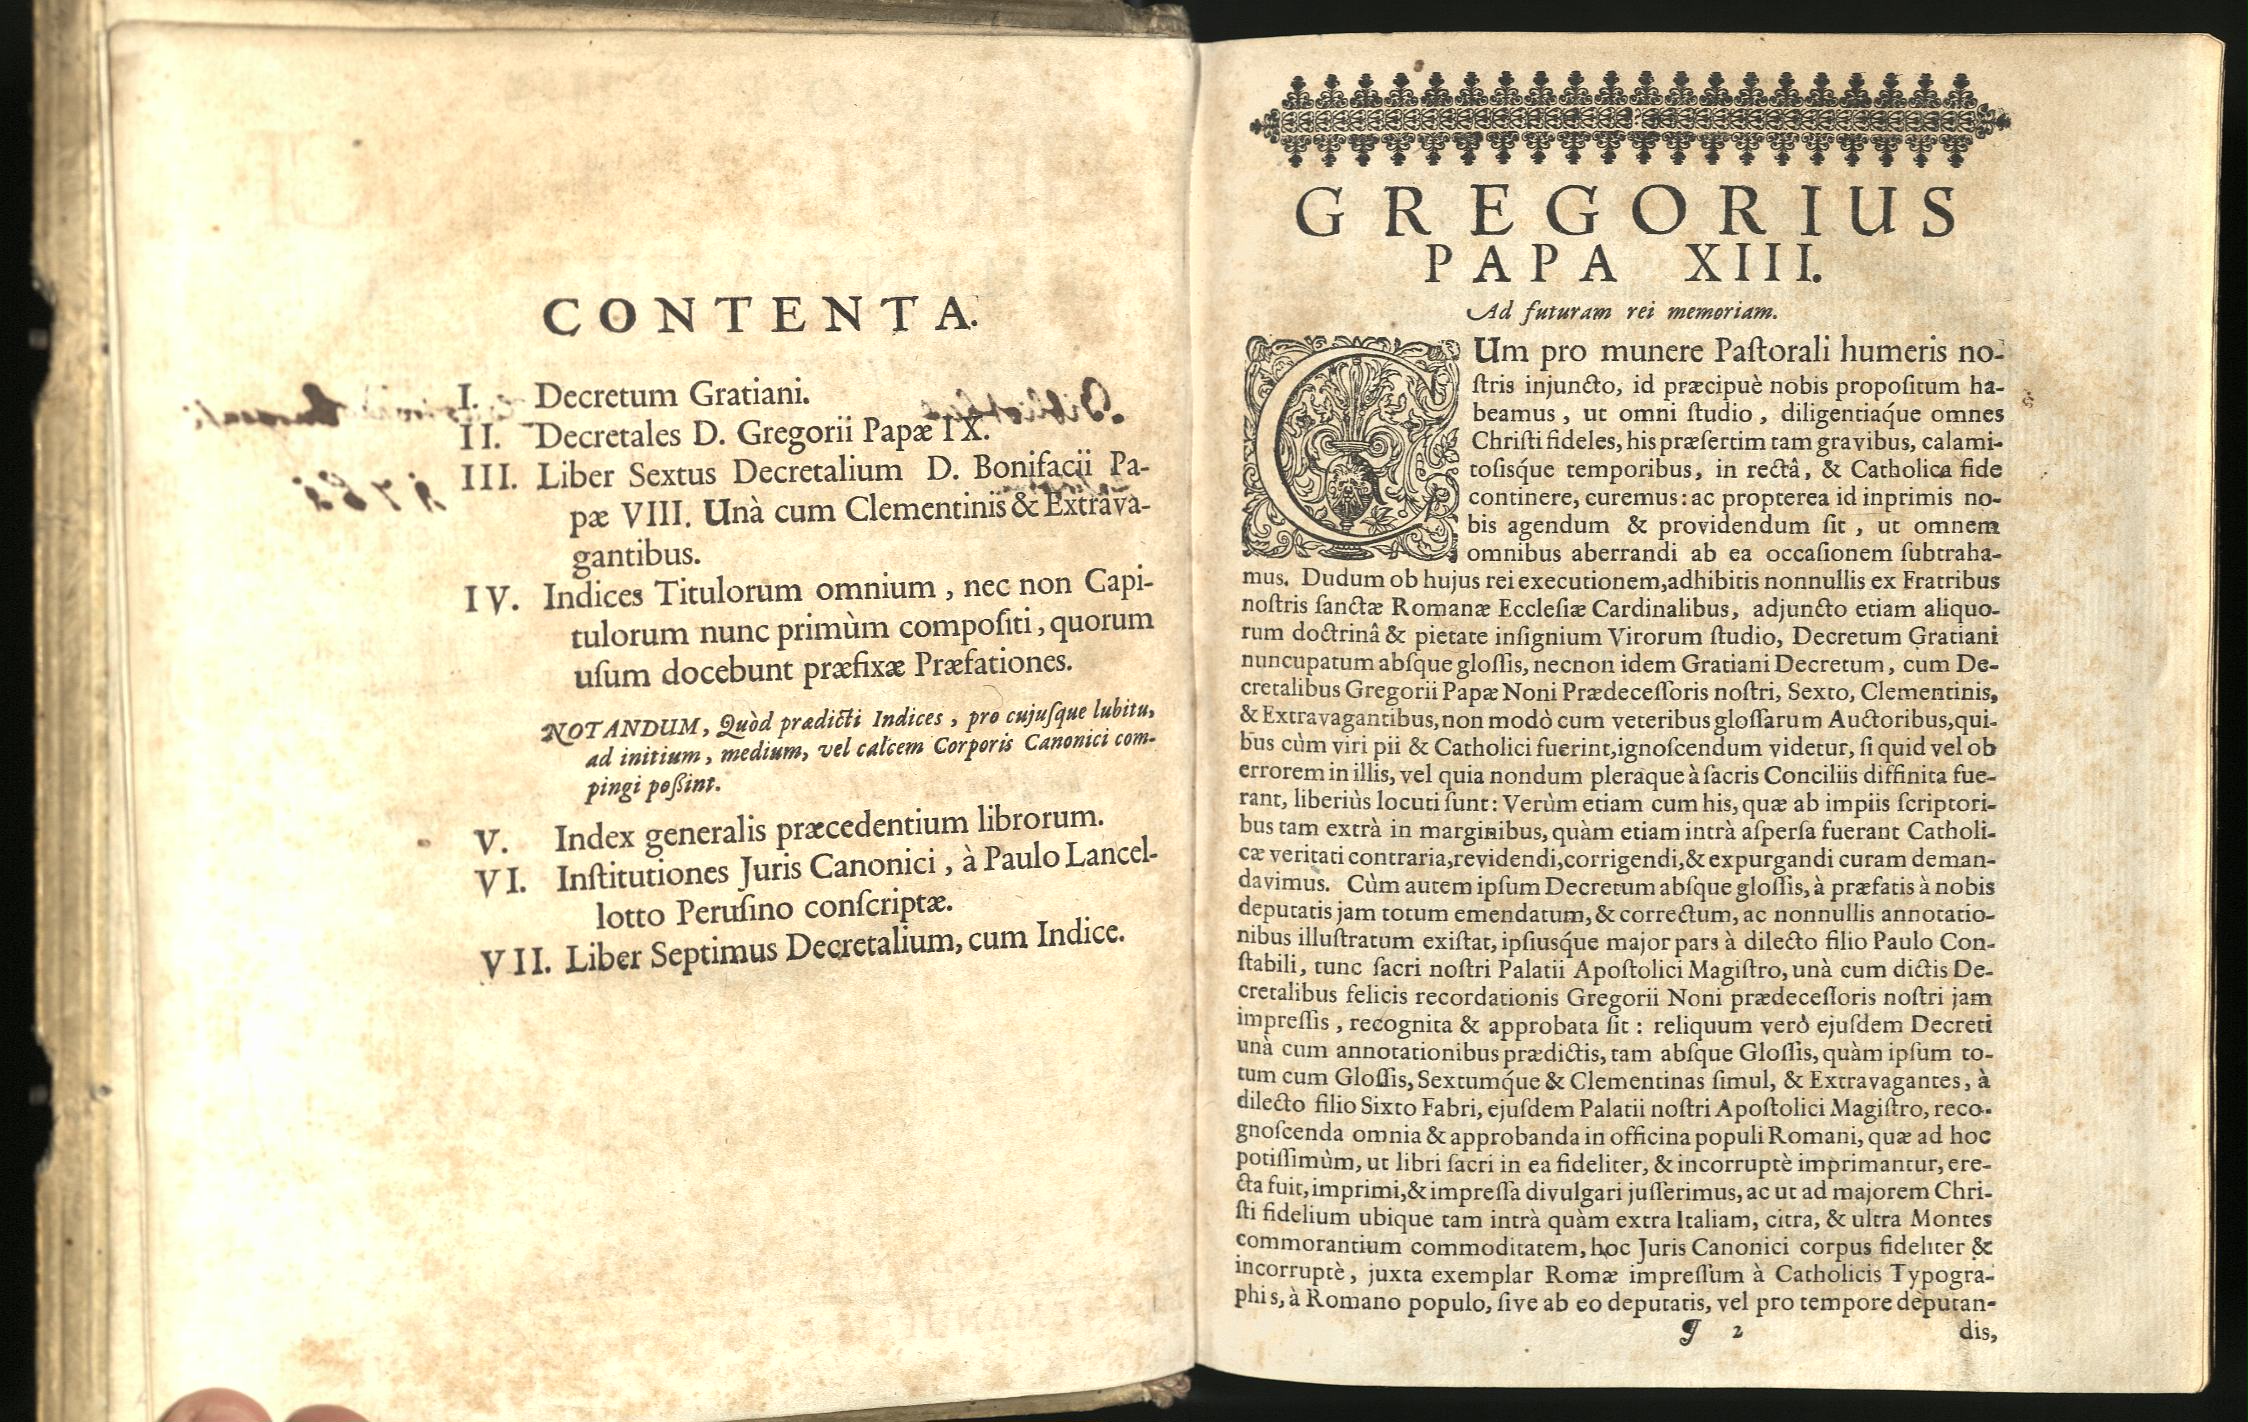 Corpus iuris canonici emendatum et notis illustratum